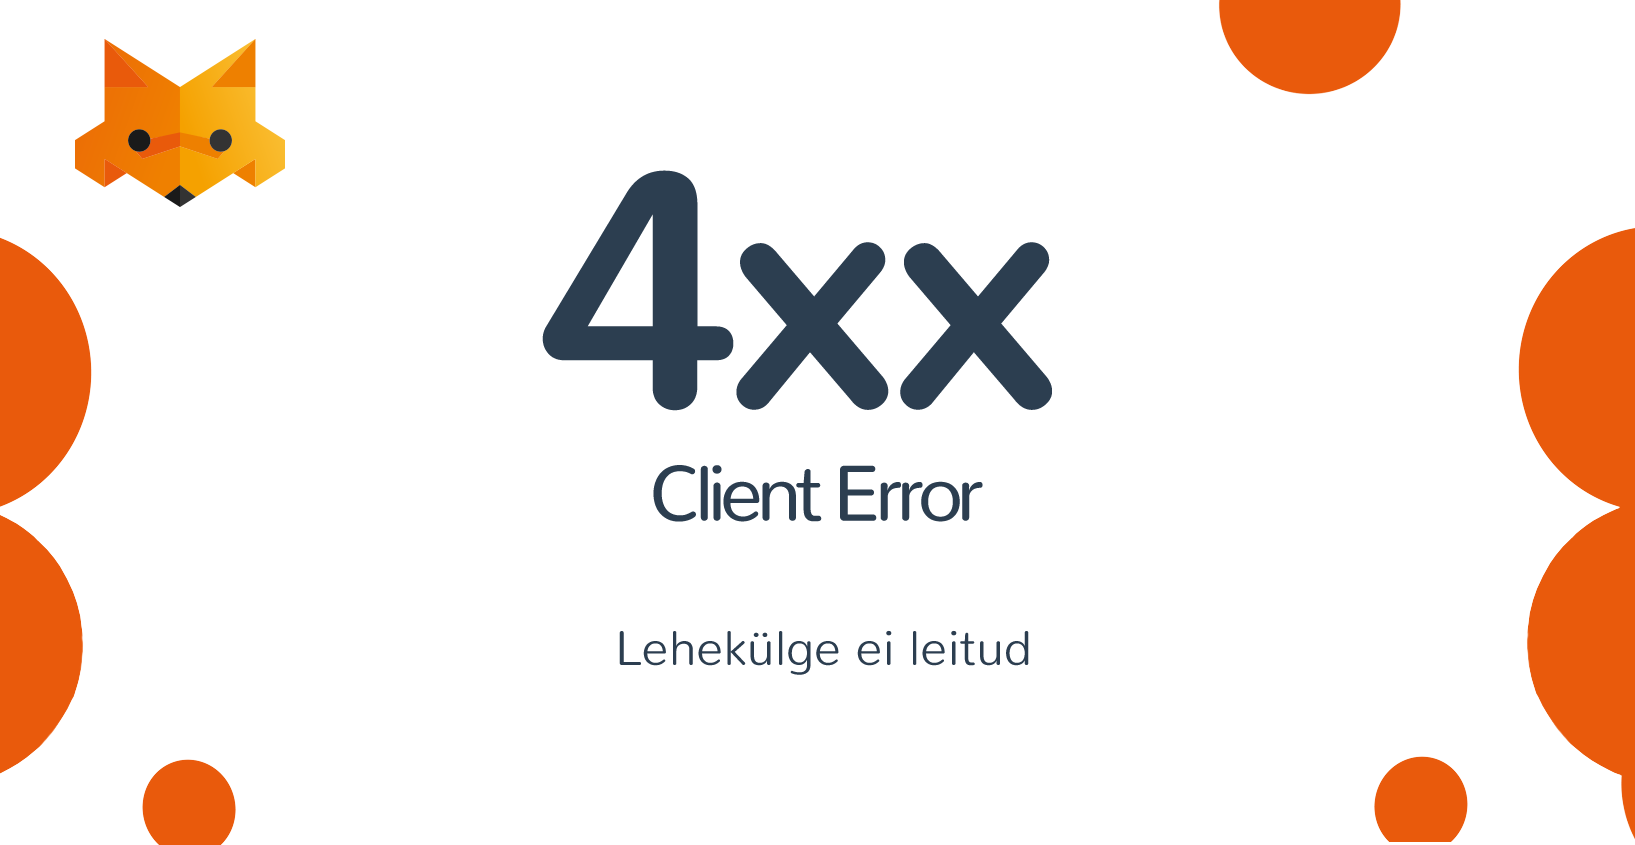 4xx Client Error